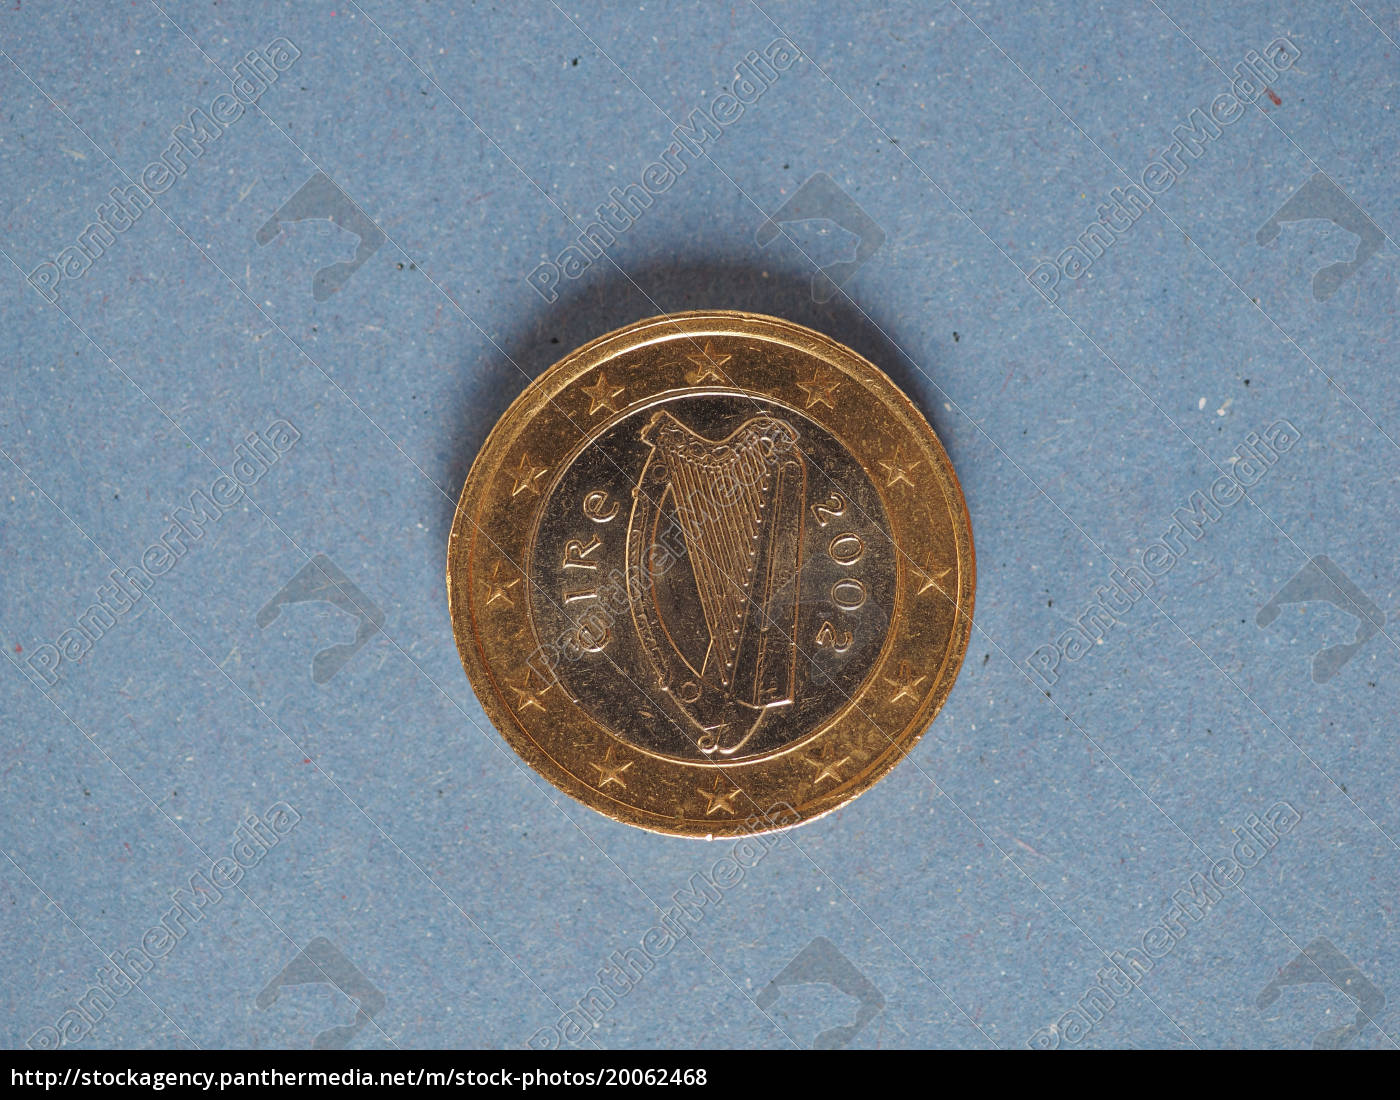 1 € münze europäische union irland über blau - Lizenzfreies Foto